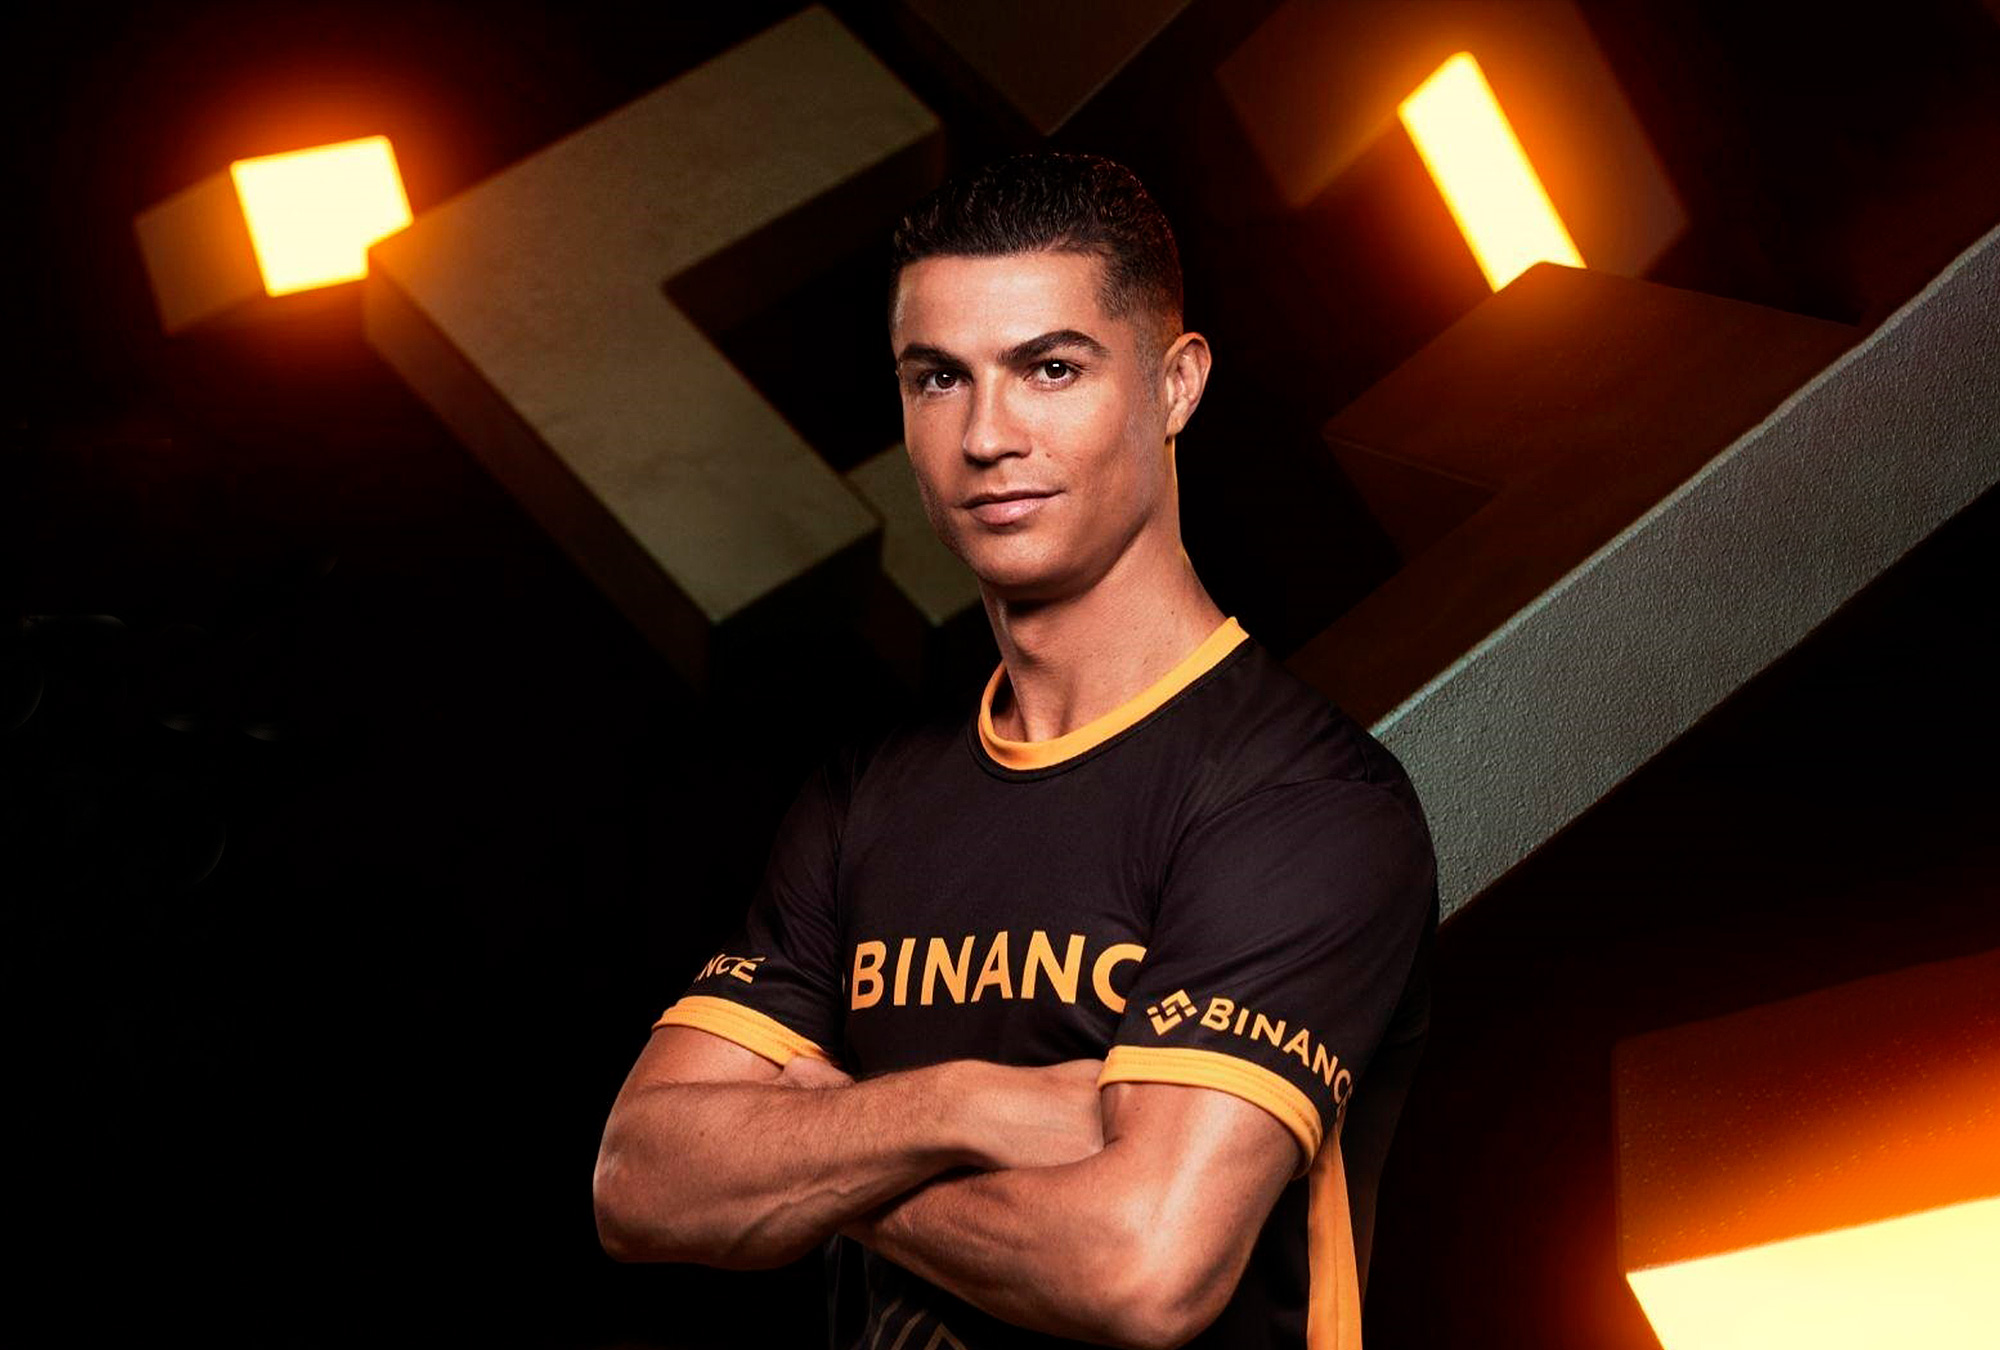 La demanda alega que Cristiano Ronaldo y Binance participaron en publicidad falsa.